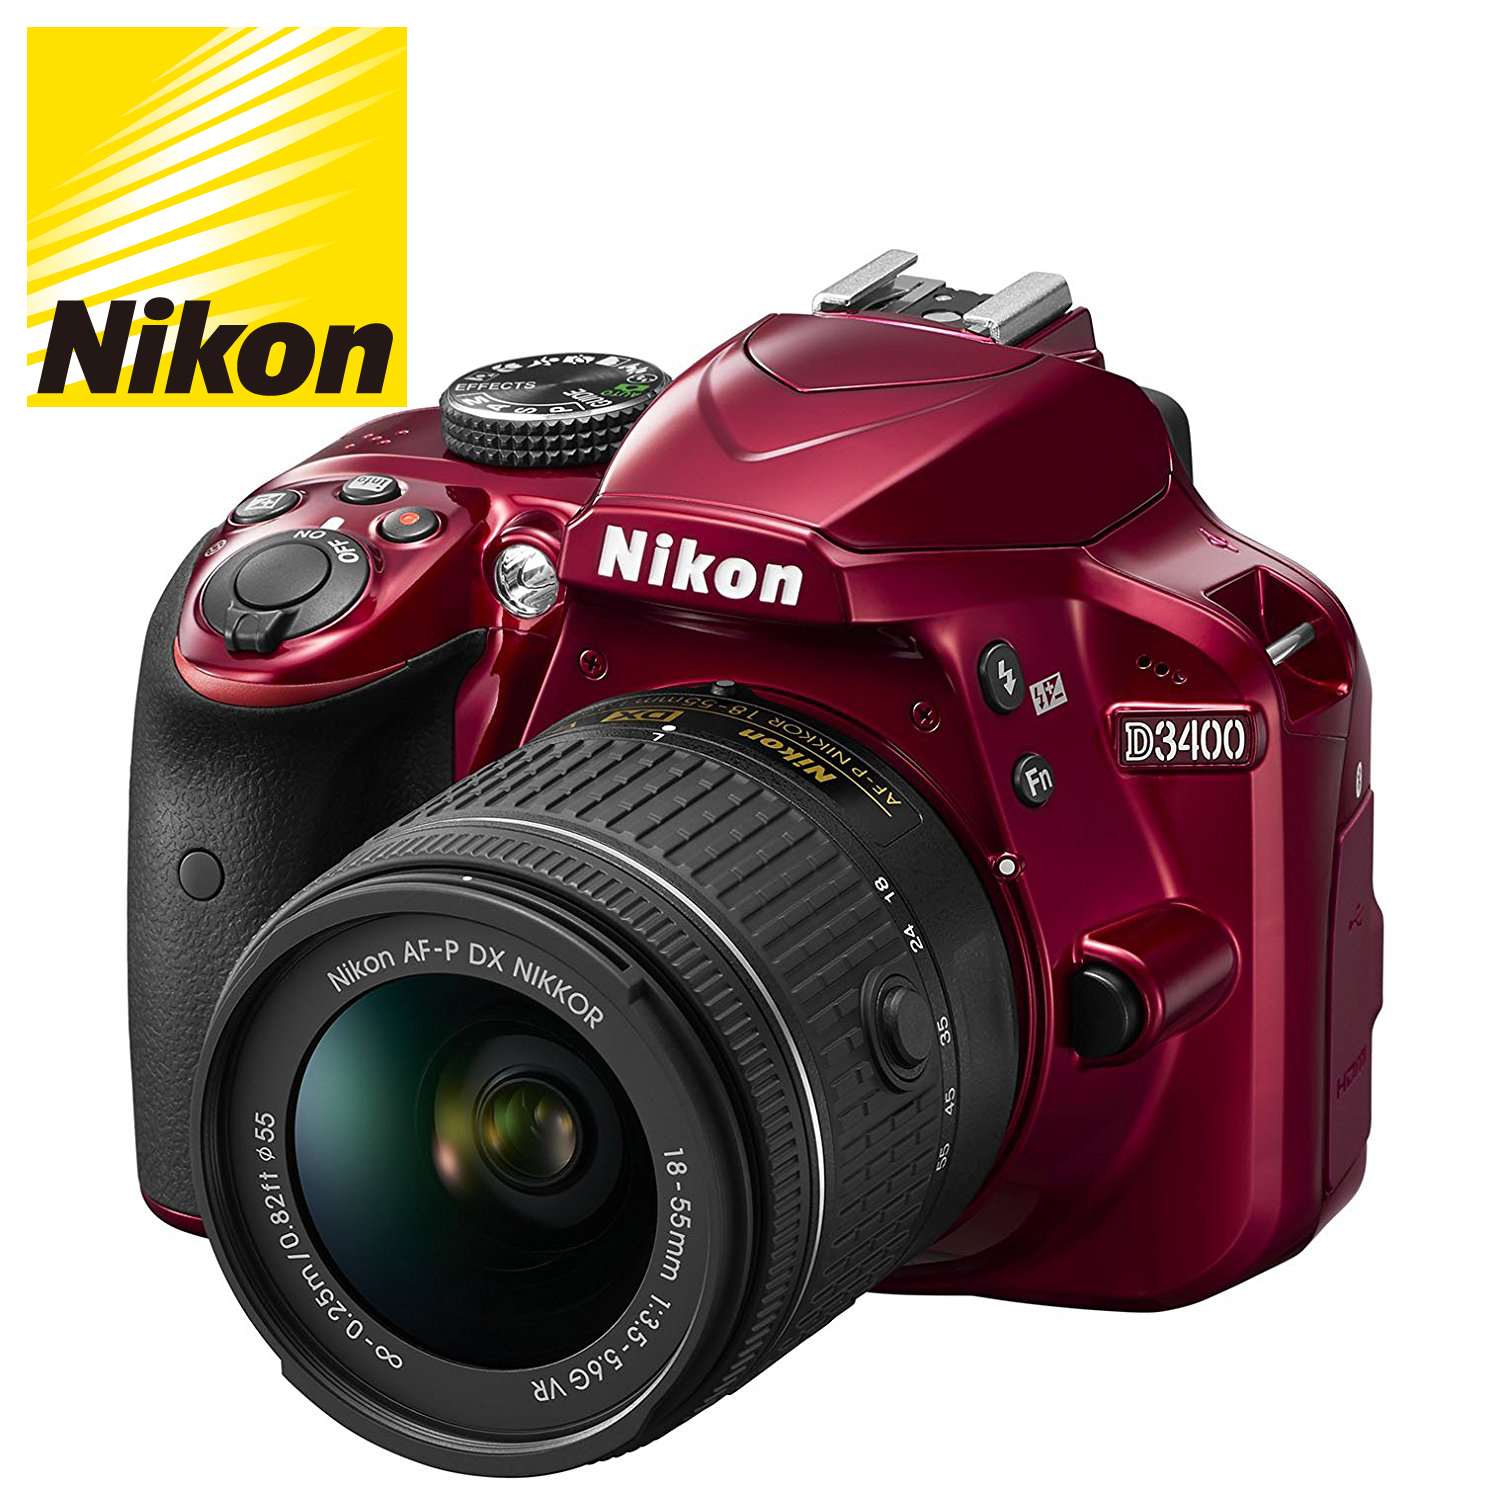 【Nikon】デジタル一眼レフカメラ